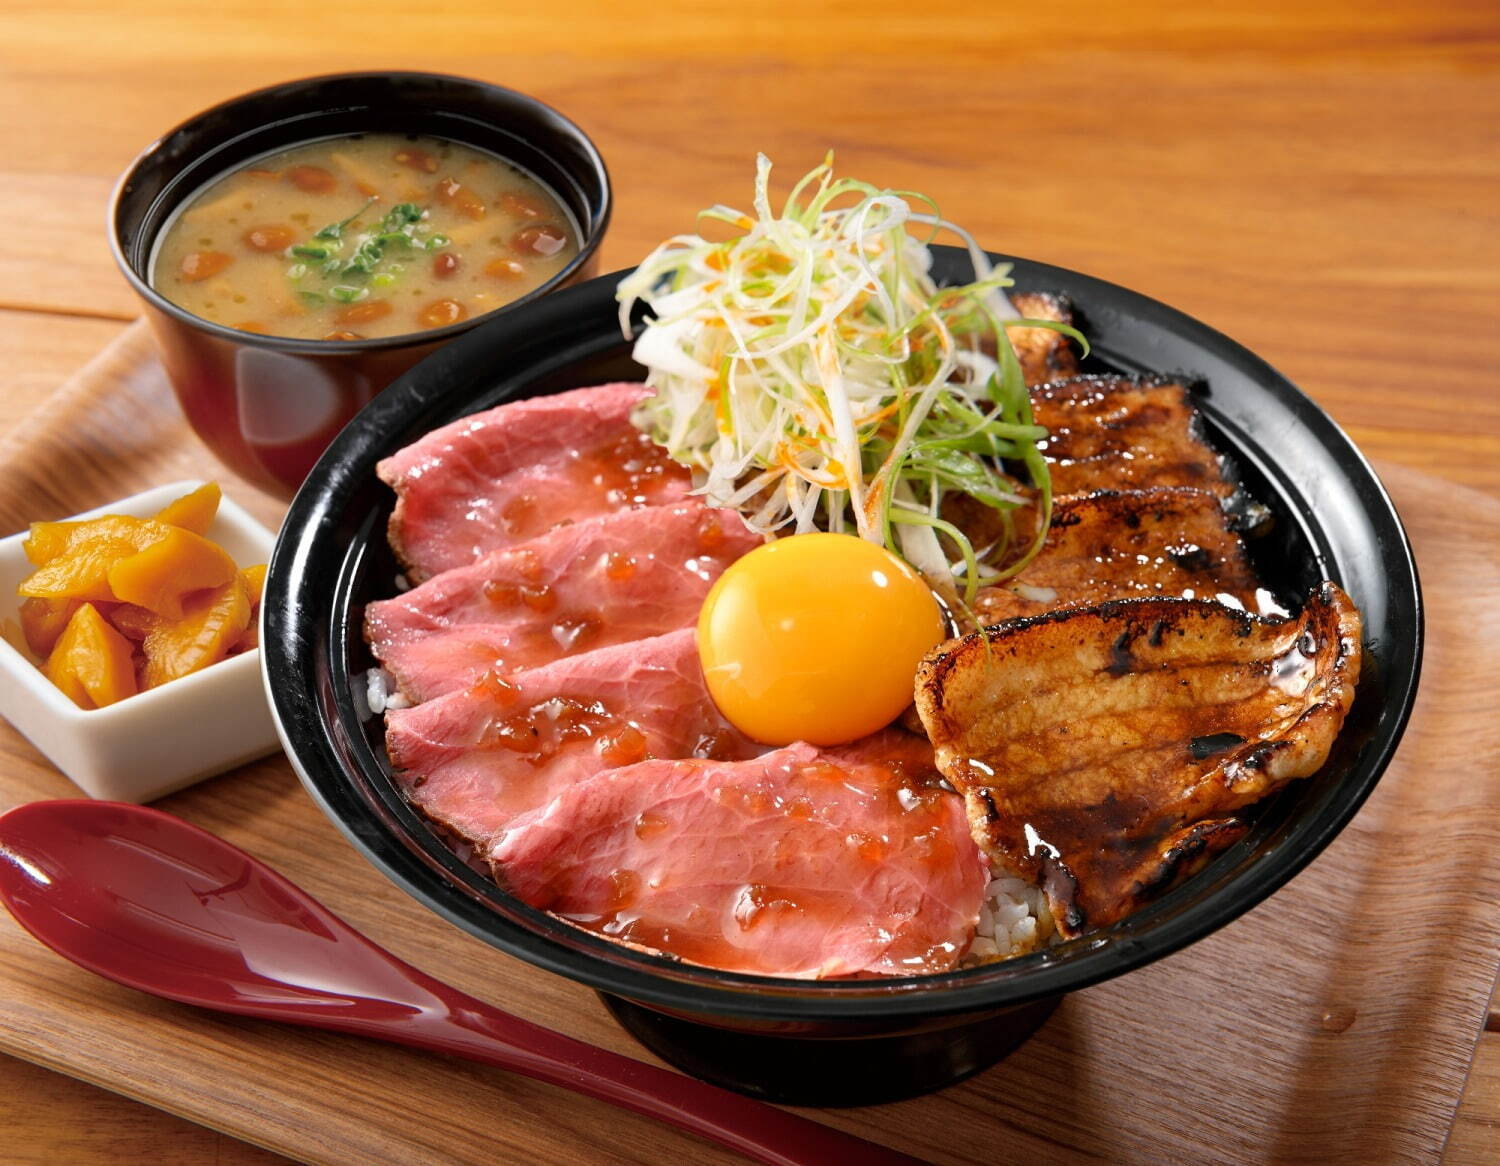 ローストビーフ Yoshimi
「ネギたま豚丼＆ローストビーフ丼」1,300円